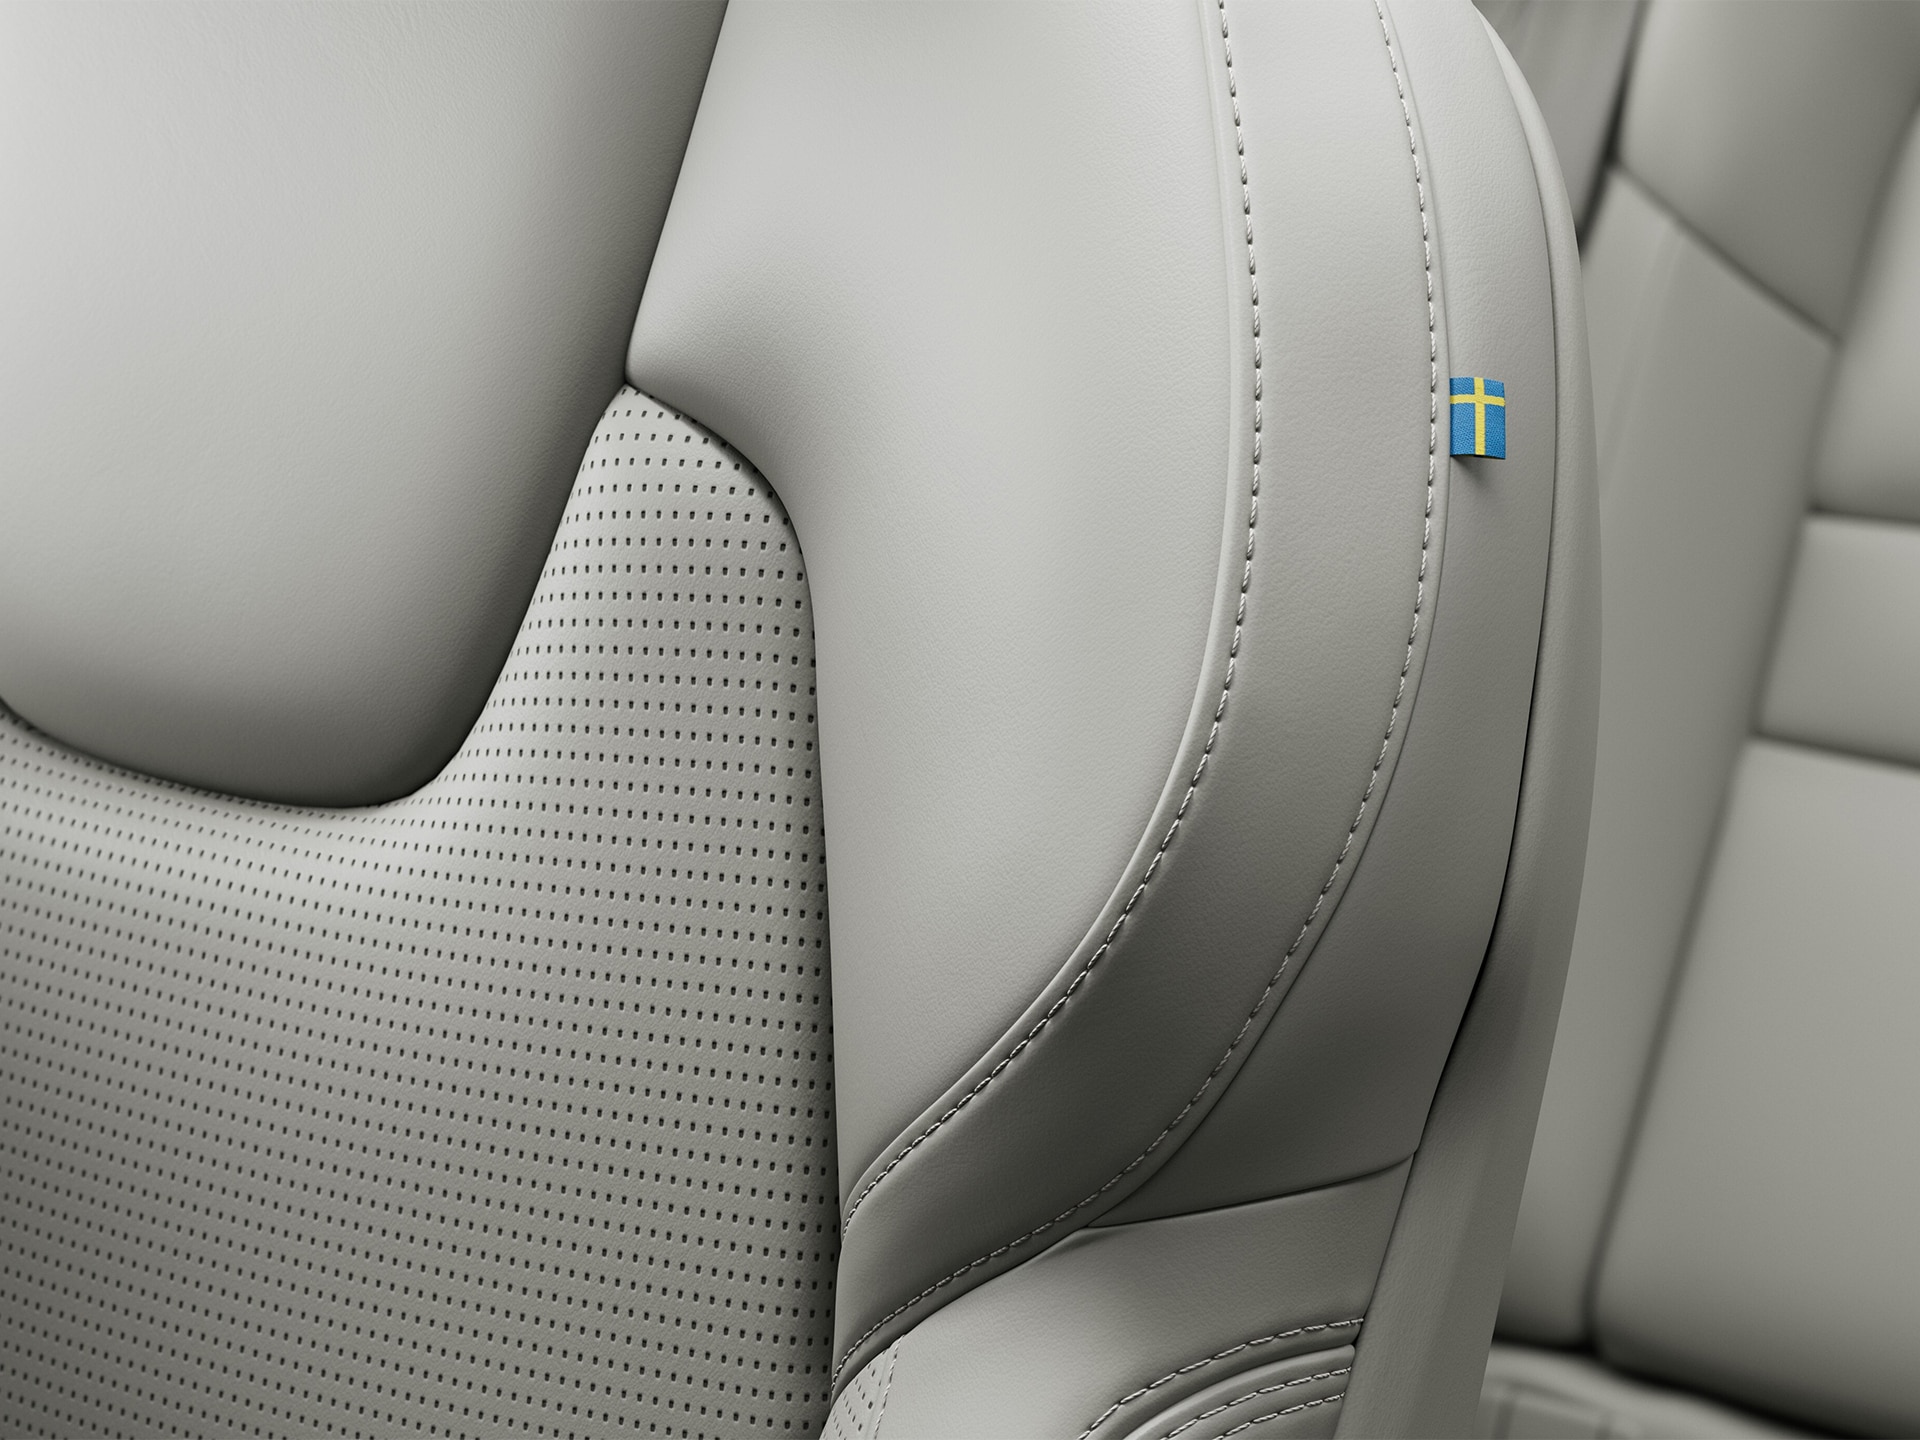 Detalle de las costuras del asiento del copiloto en cuero de Napa del semihíbrido Volvo V60 con una pequeña bandera sueca.